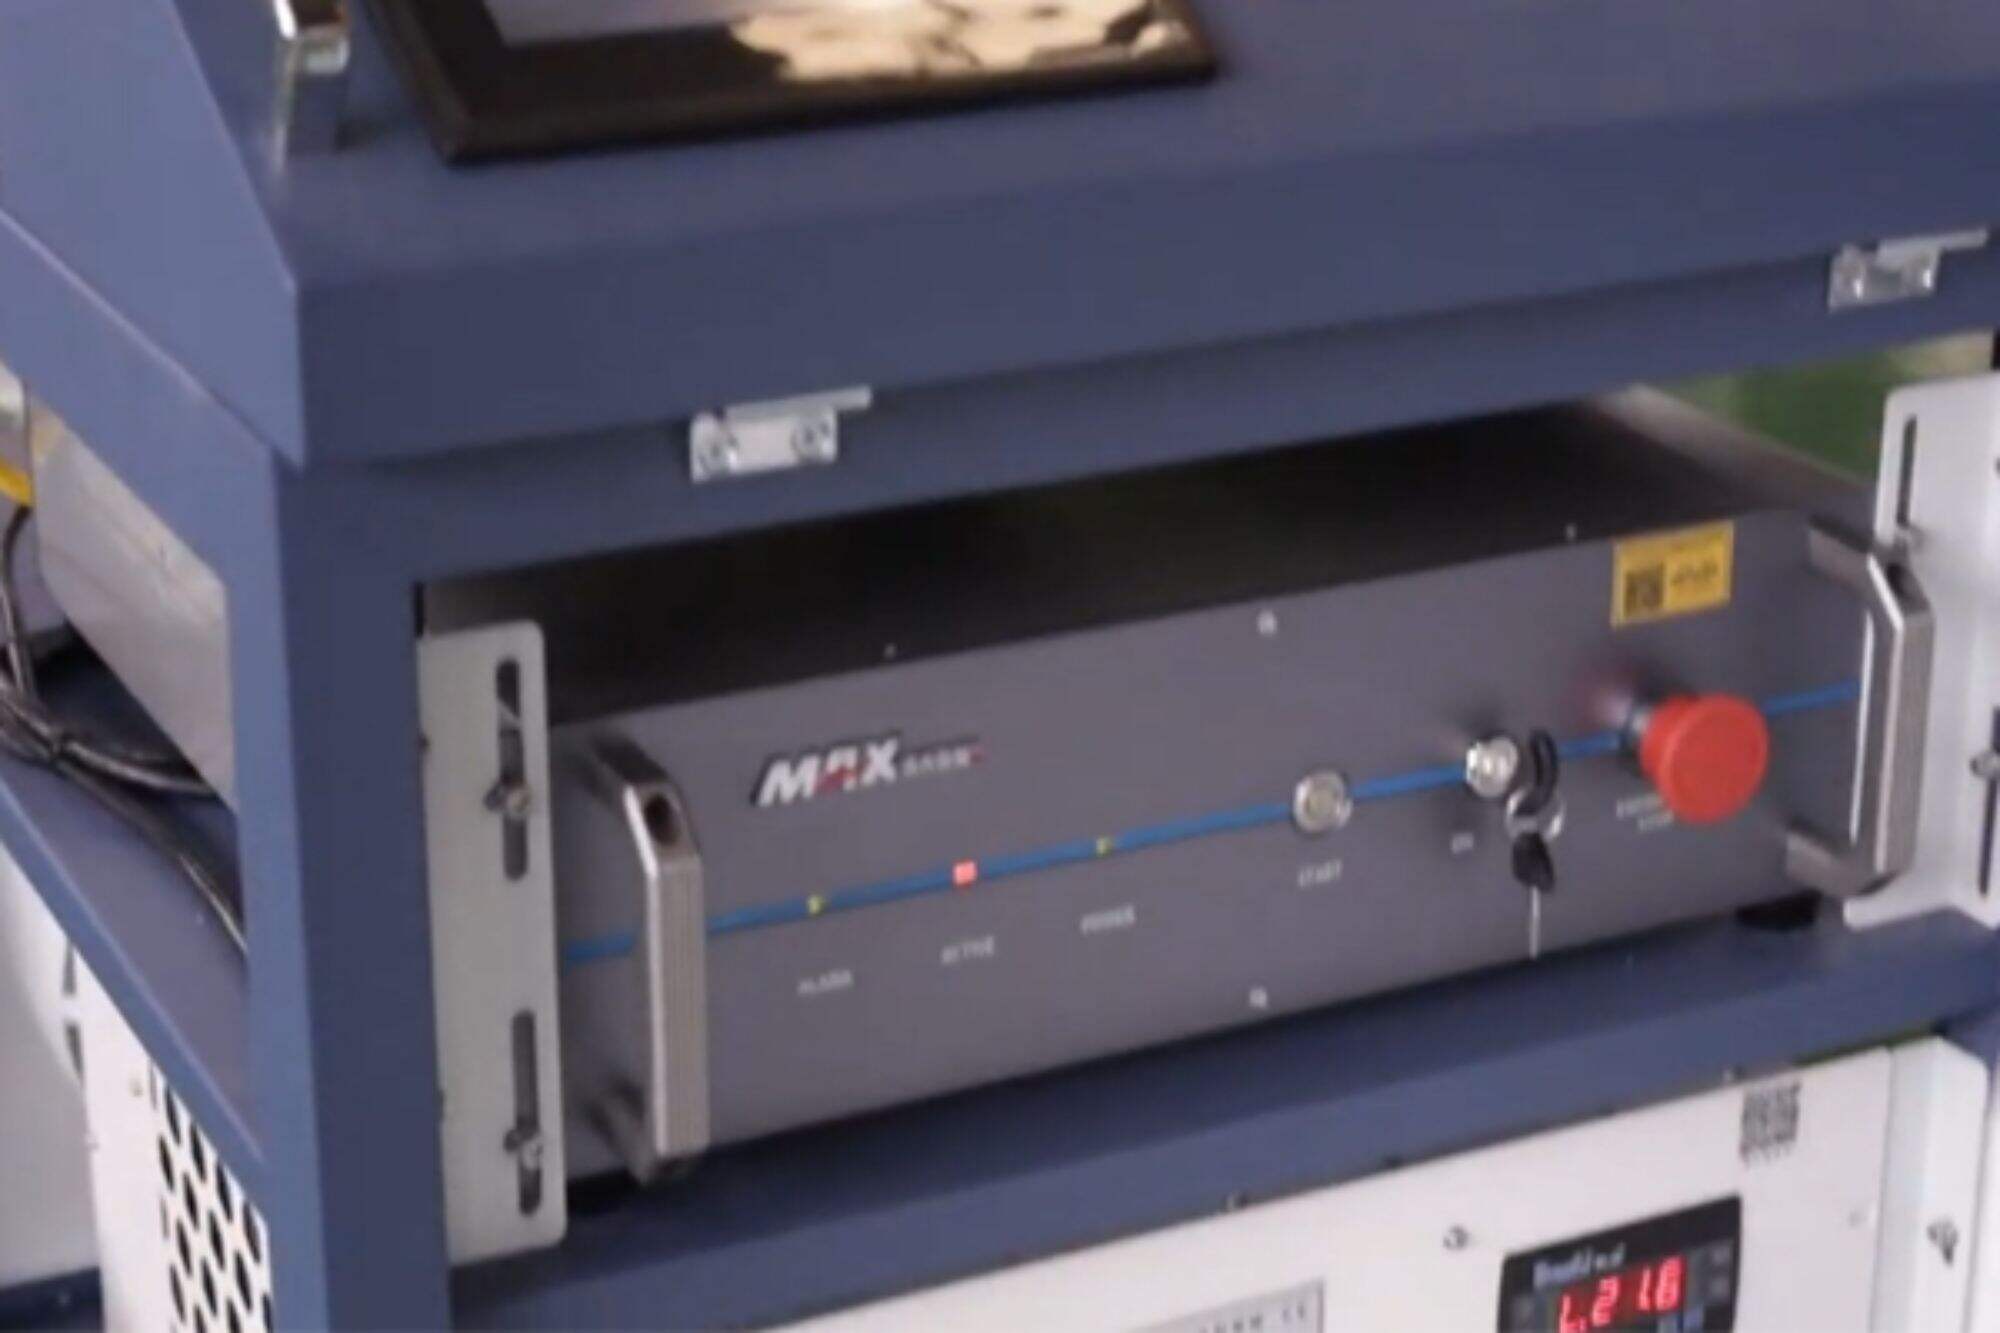 آلة التنظيف بالليزر DMK CW بقدرة 2000 واط. سيتم اختبار المعدات مسبقًا قبل الشحن